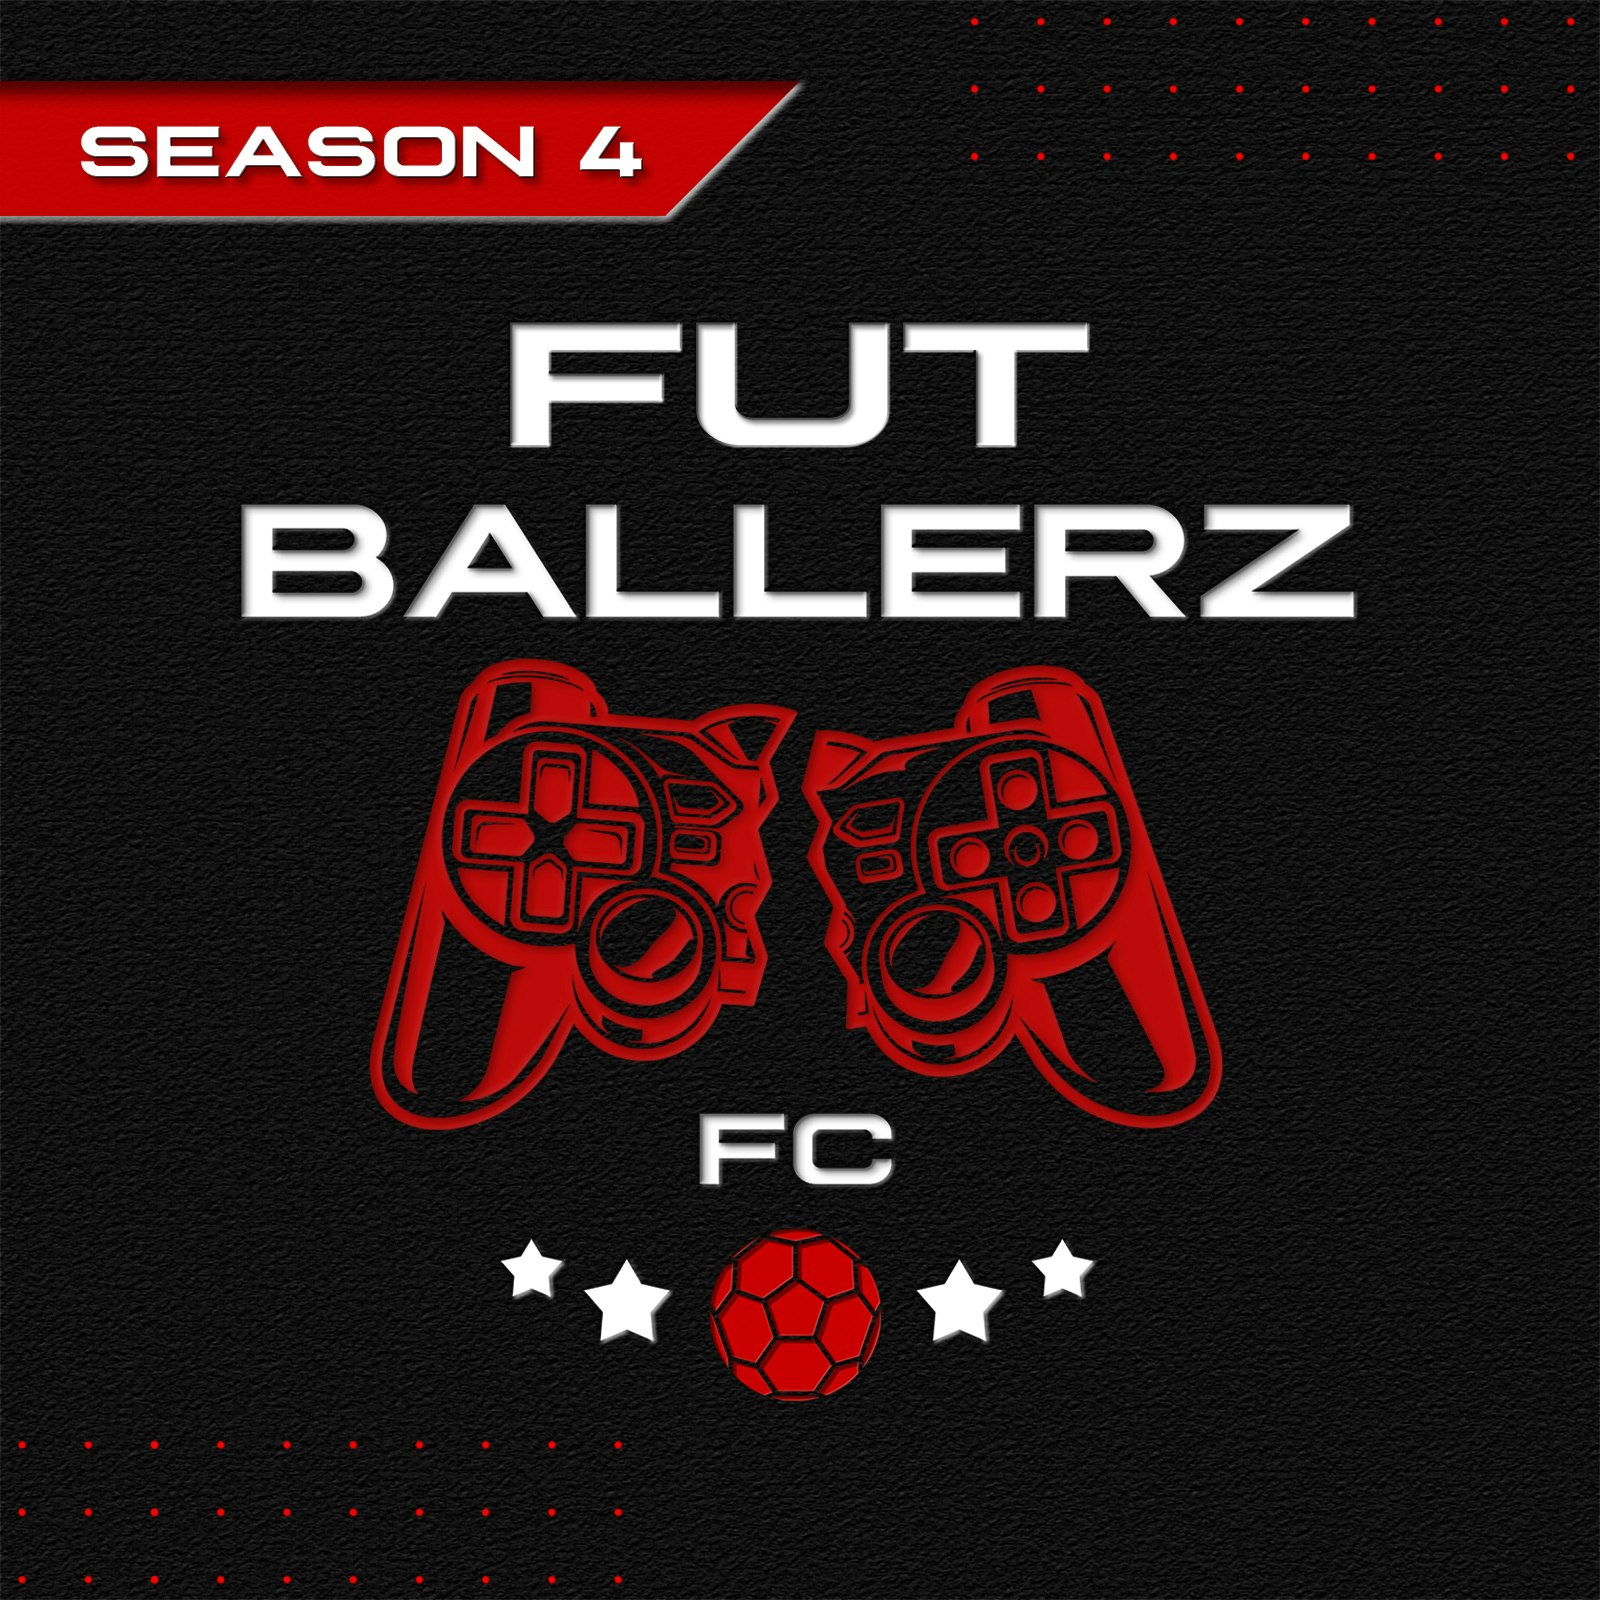 FUT Ballerz FC